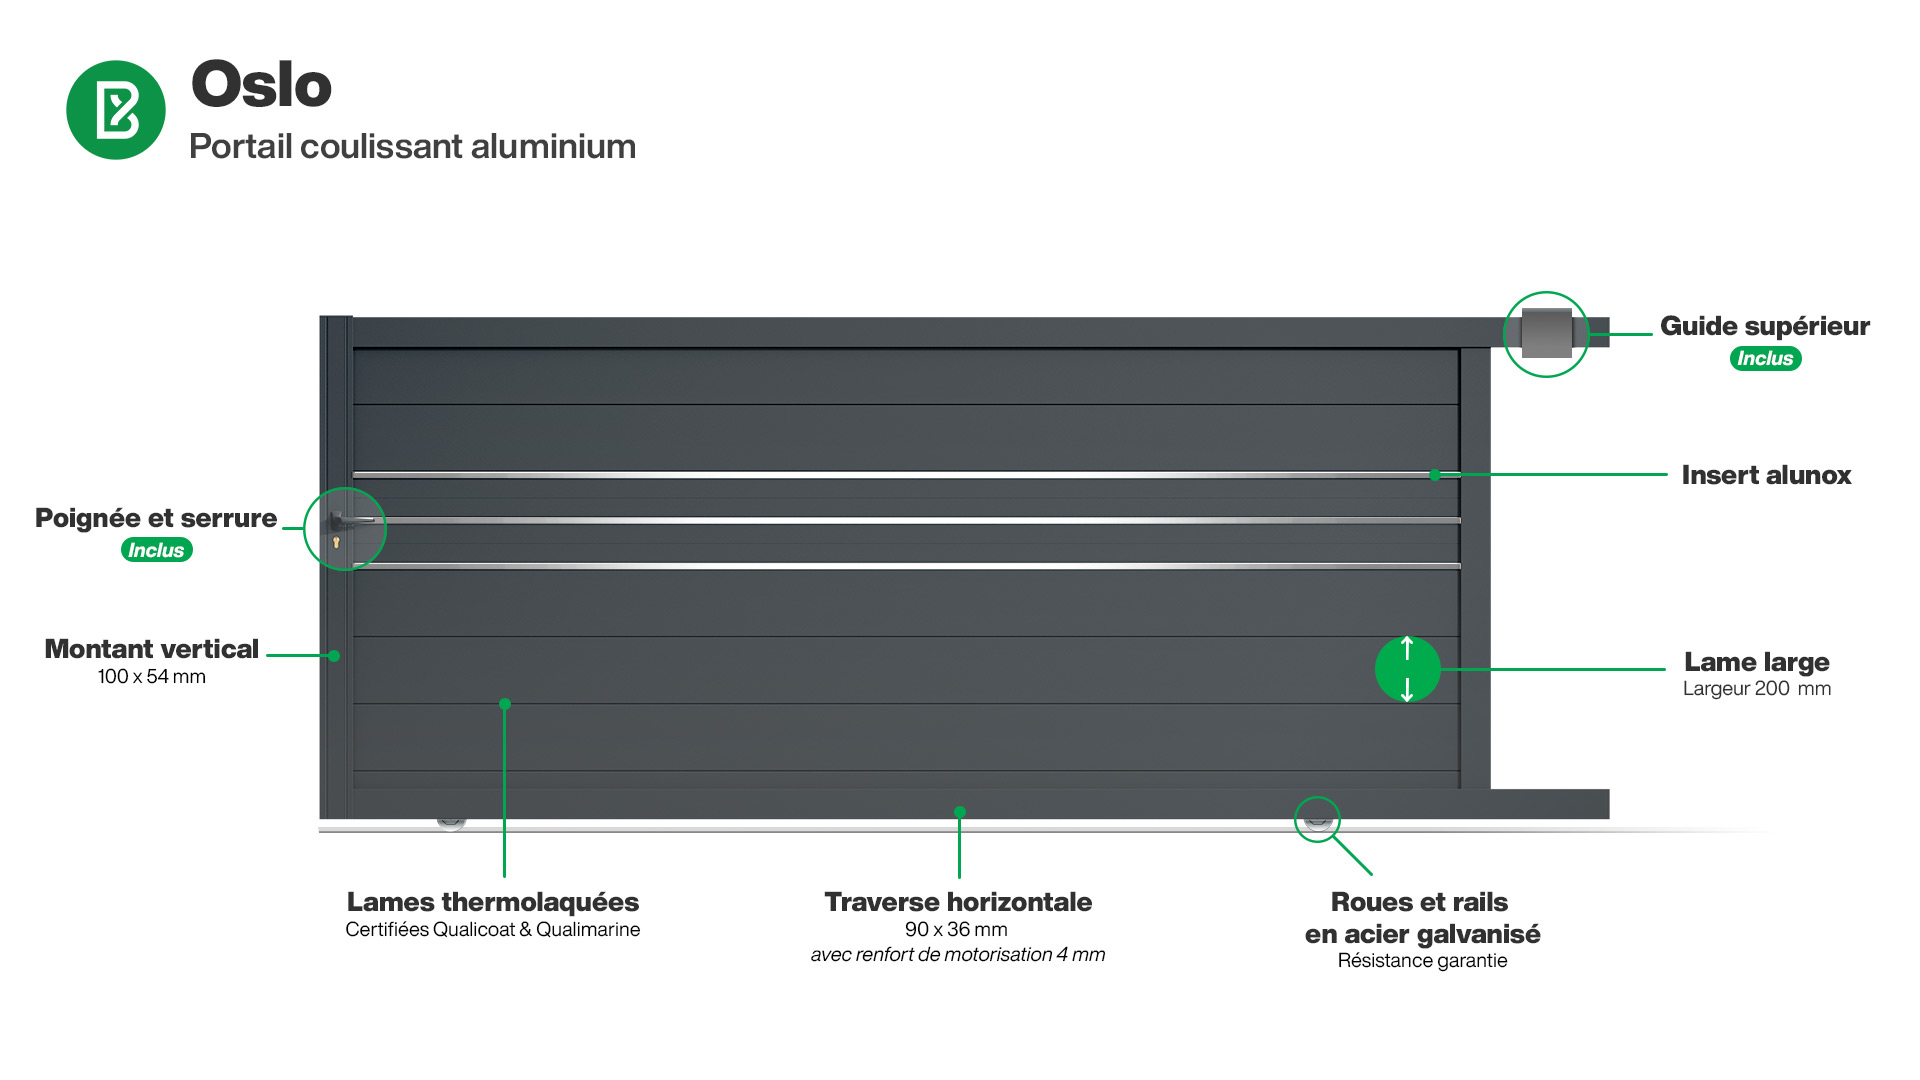 Portail : Infographie d'un portail coulissant aluminium modèle OSLO